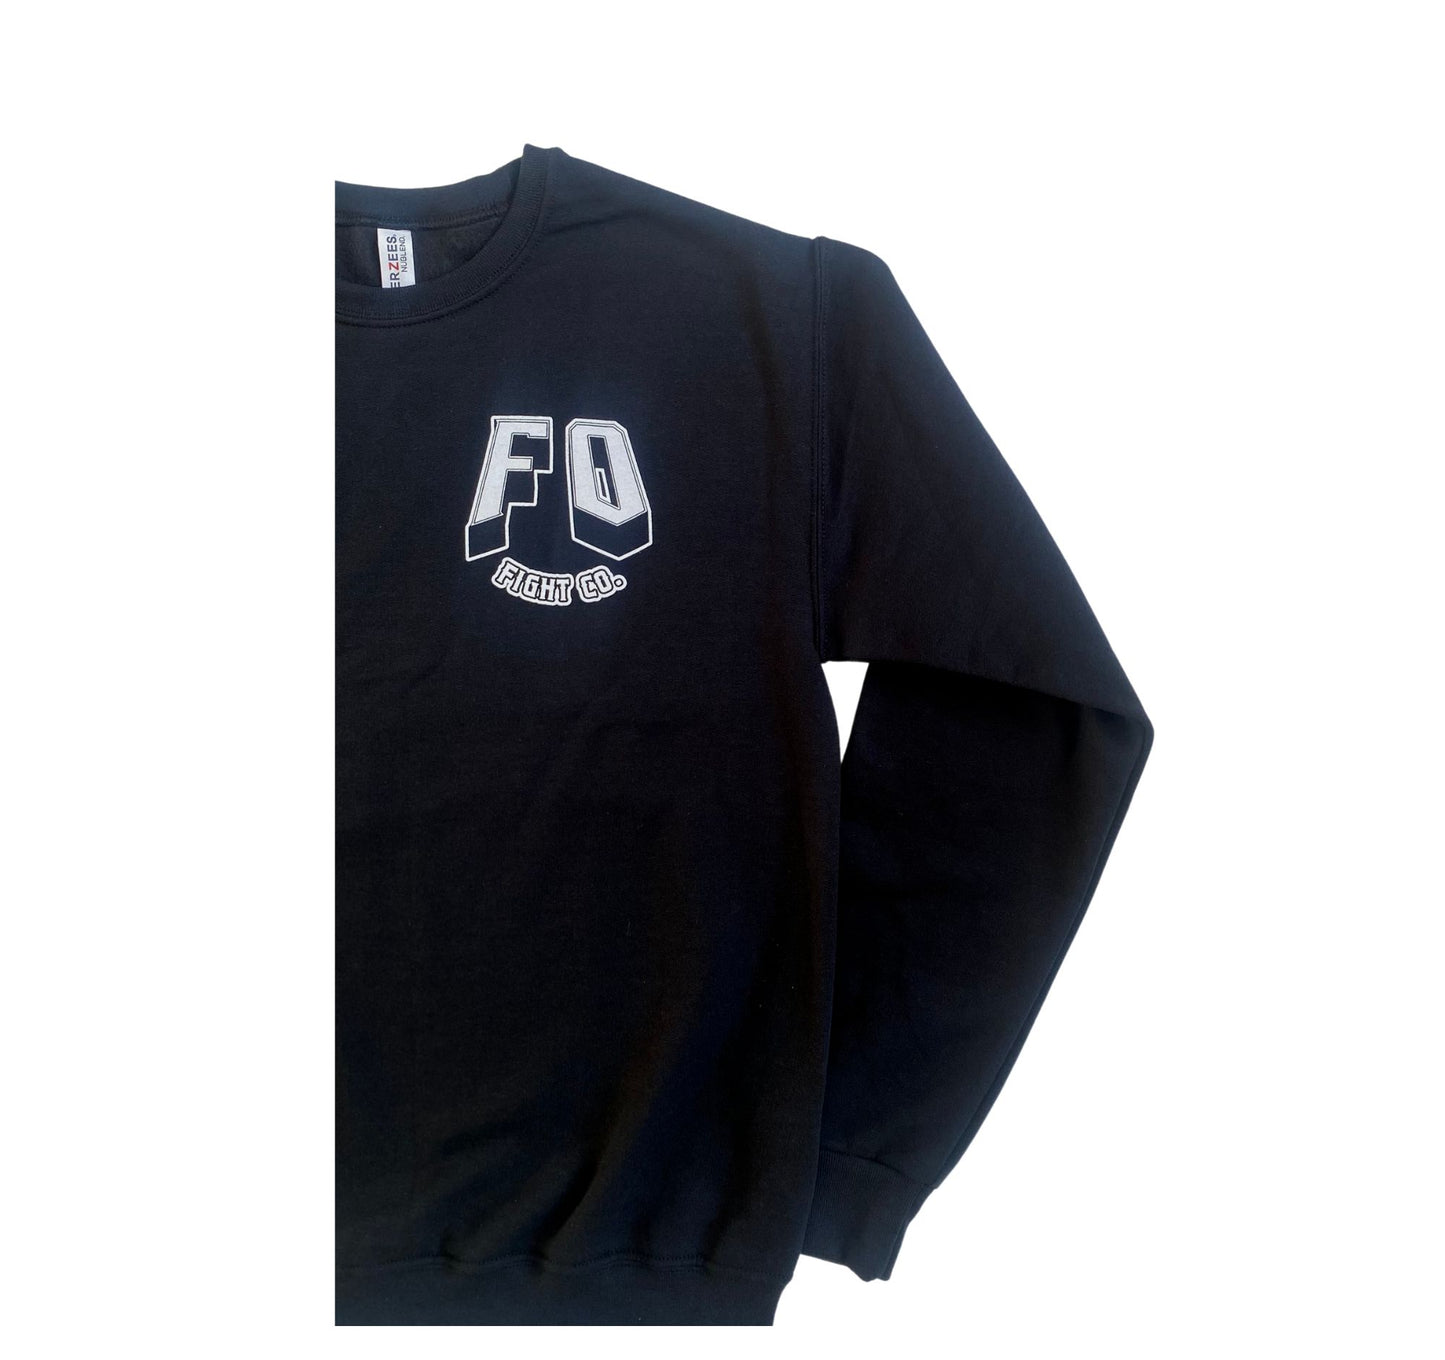 FOFCO Crew Neck Sweater